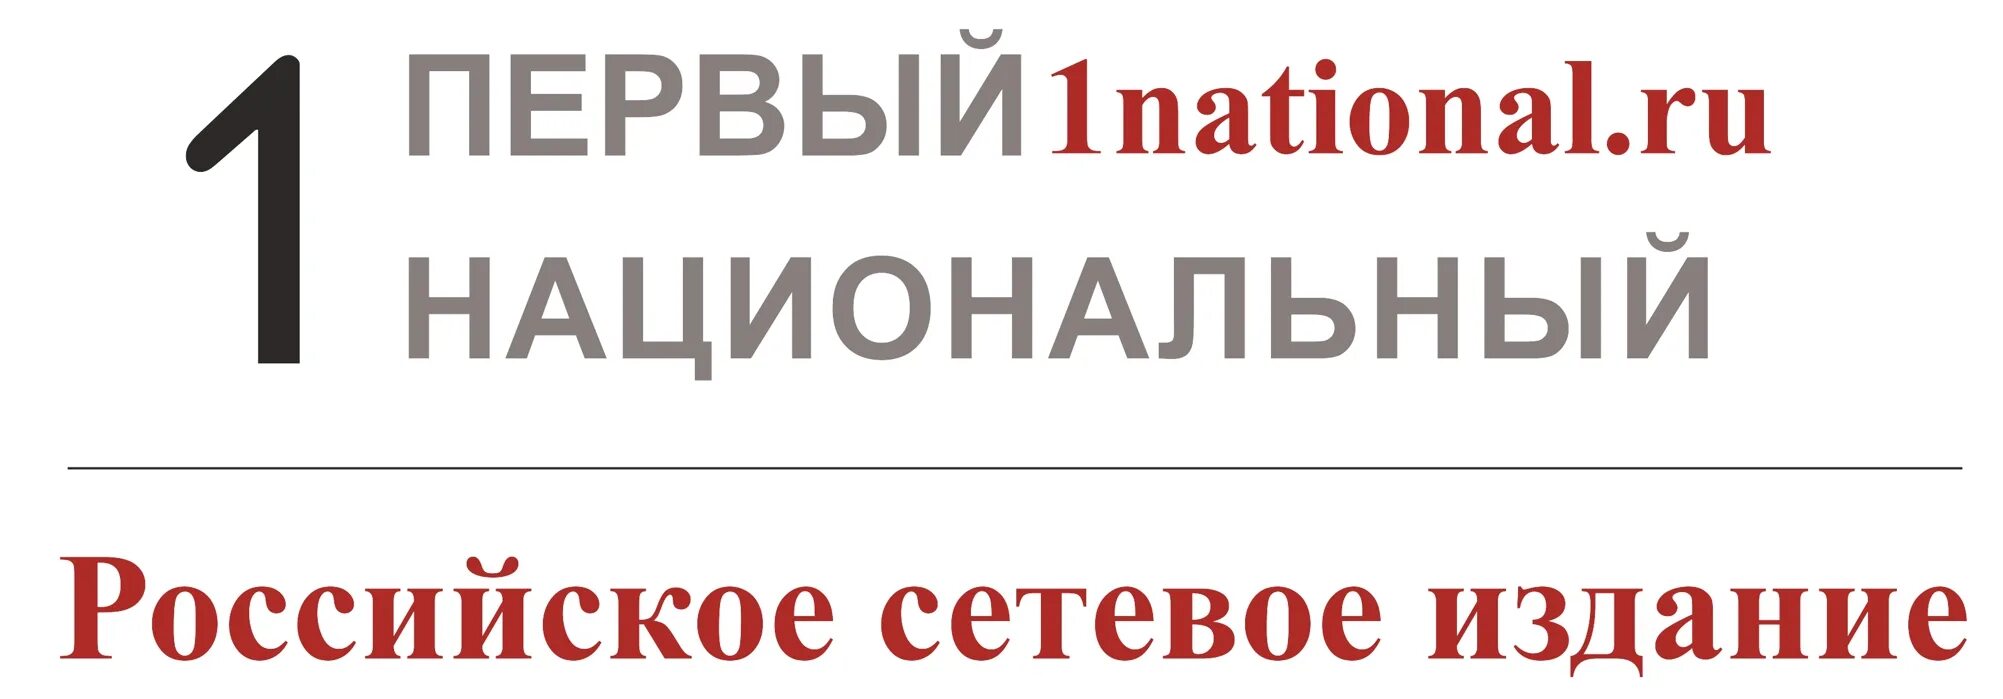 1 национальный про. Первый национальный. Российский национальный канал. 1 Национальный лого. Телеканал 1 российский национальный логотип.